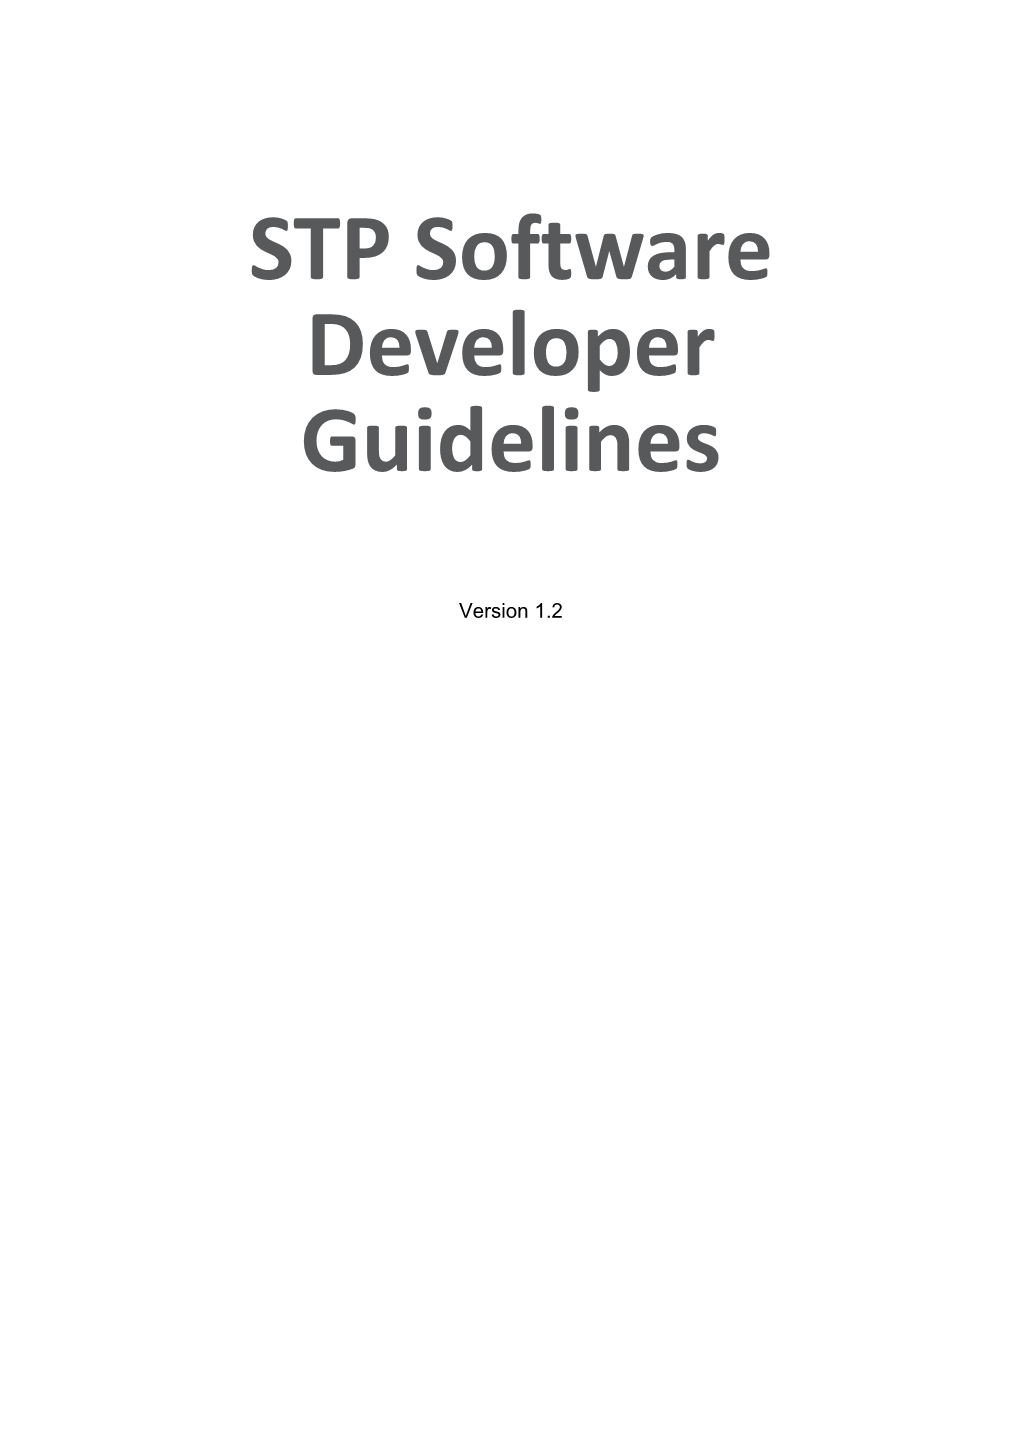 Software Developer Guidelines V1.2